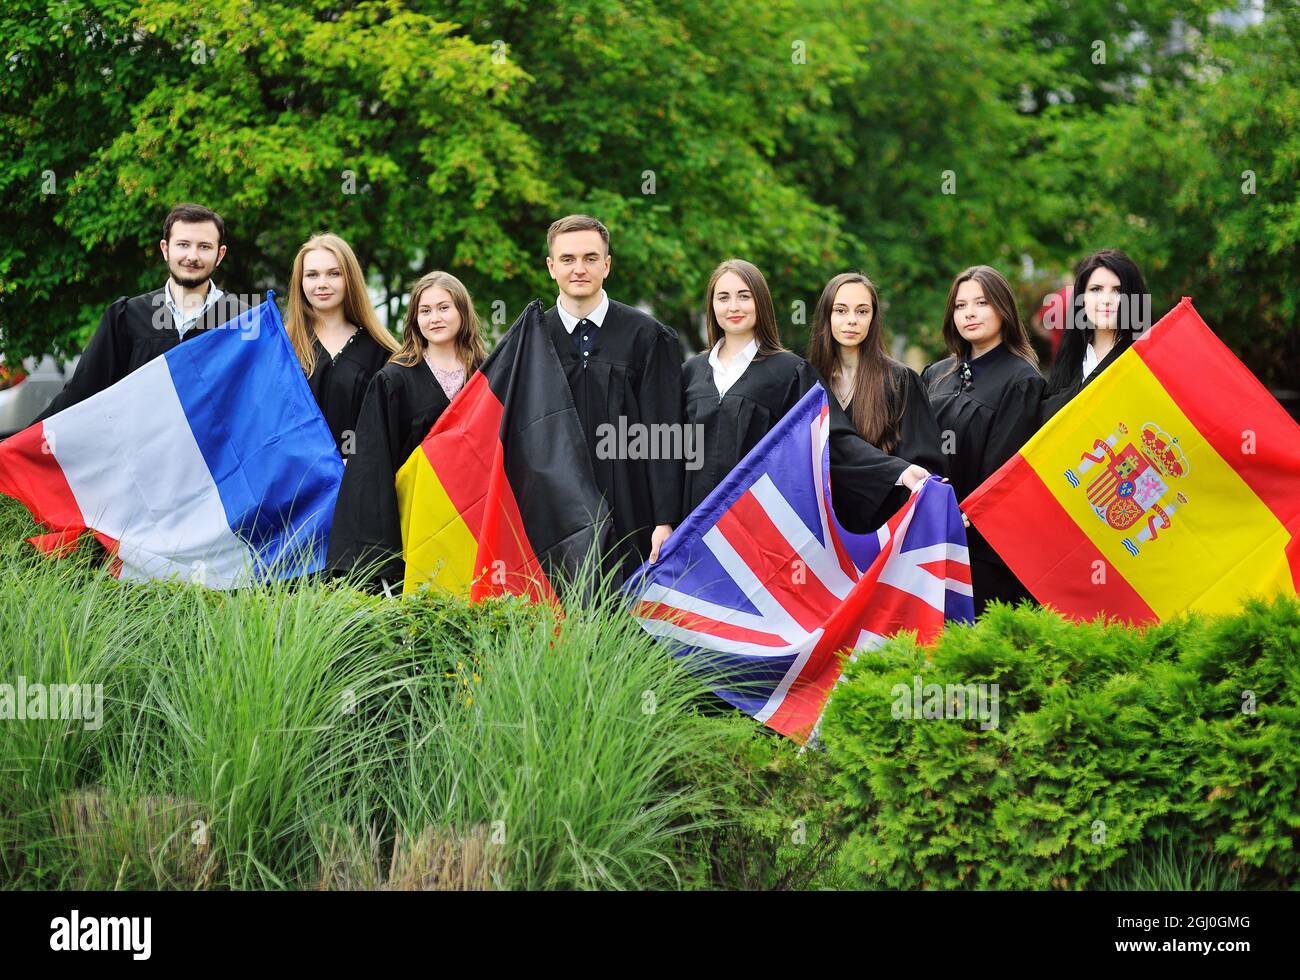 Groupe d'étudiants de la Faculté des langues étrangères diplômés en robes tiennent les drapeaux de la Grande-Bretagne, de la France, de l'Espagne et de l'Allemagne entre leurs mains. Banque D'Images